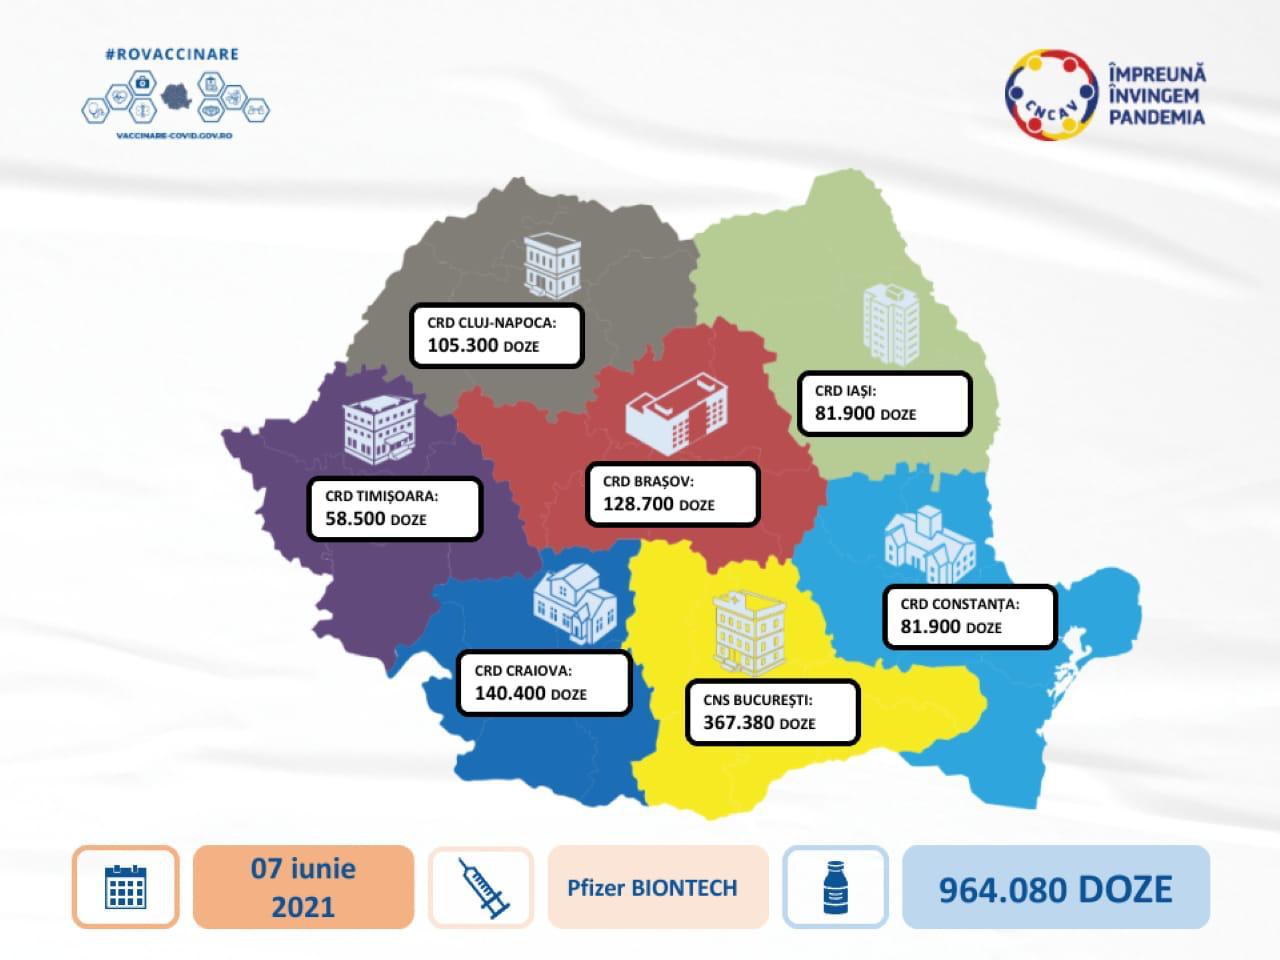 964.080 XNUMX doser av pfizer biontech-vaccin nådde Rumänien för distribution